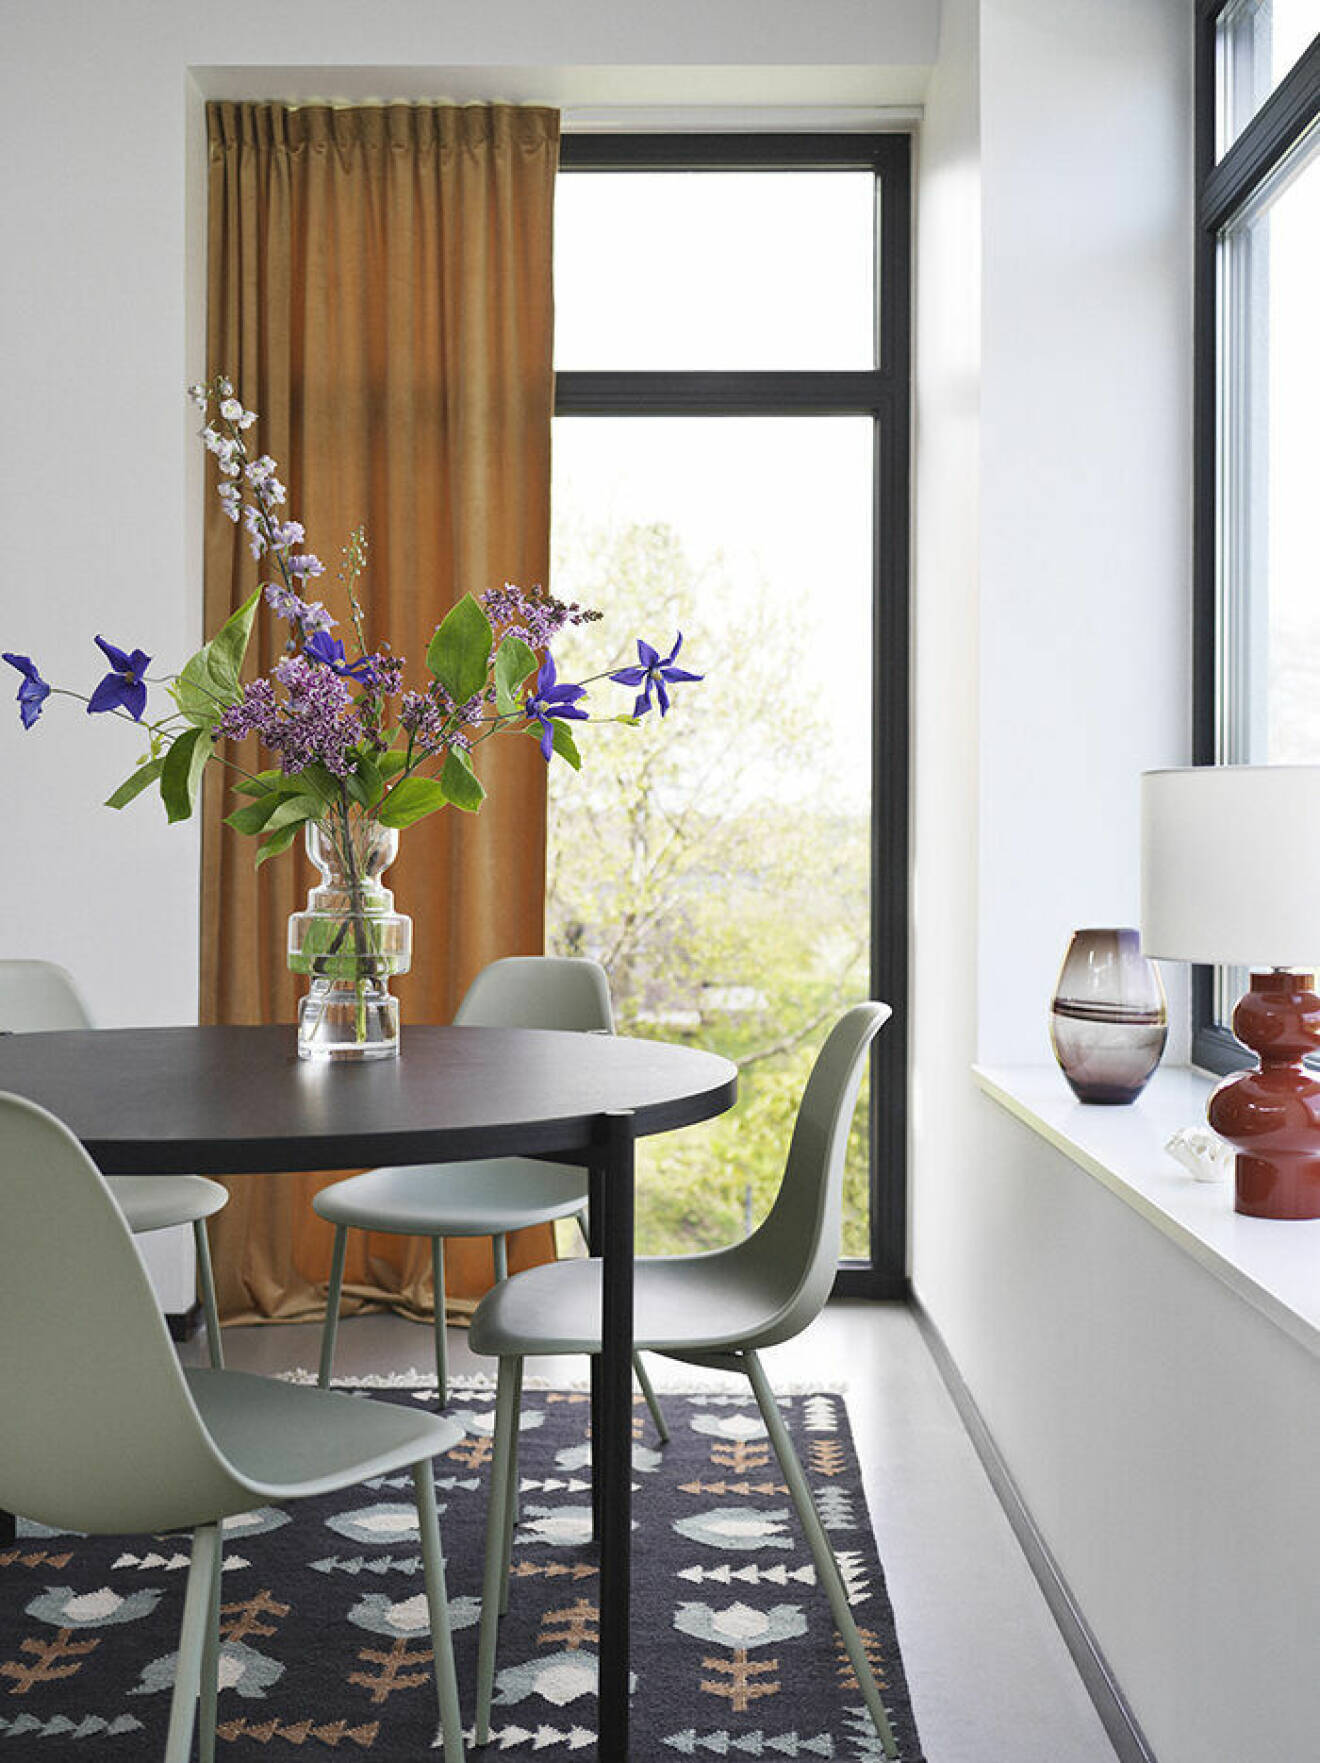 Matbord i miljöbild från Åhlens höstkollektion 2019, brun skala